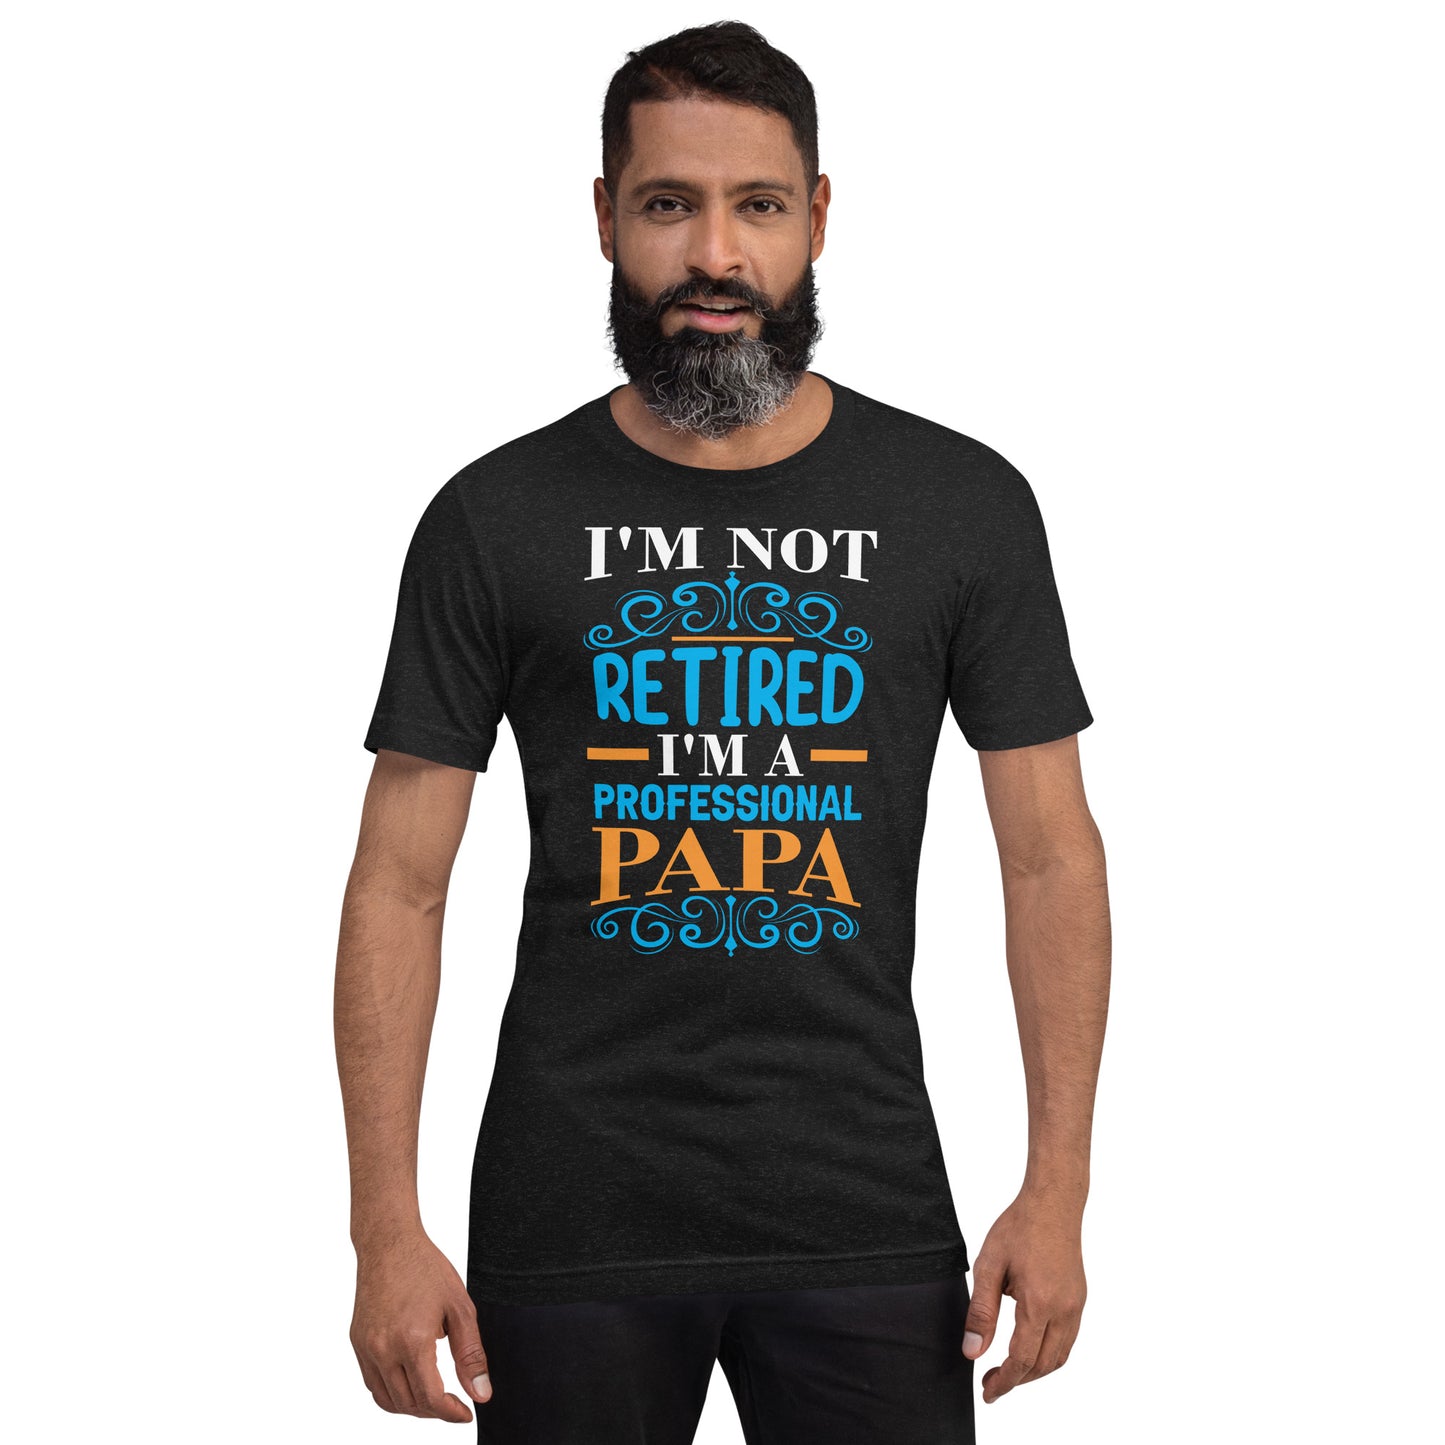 I'm not retired I'm PAPA